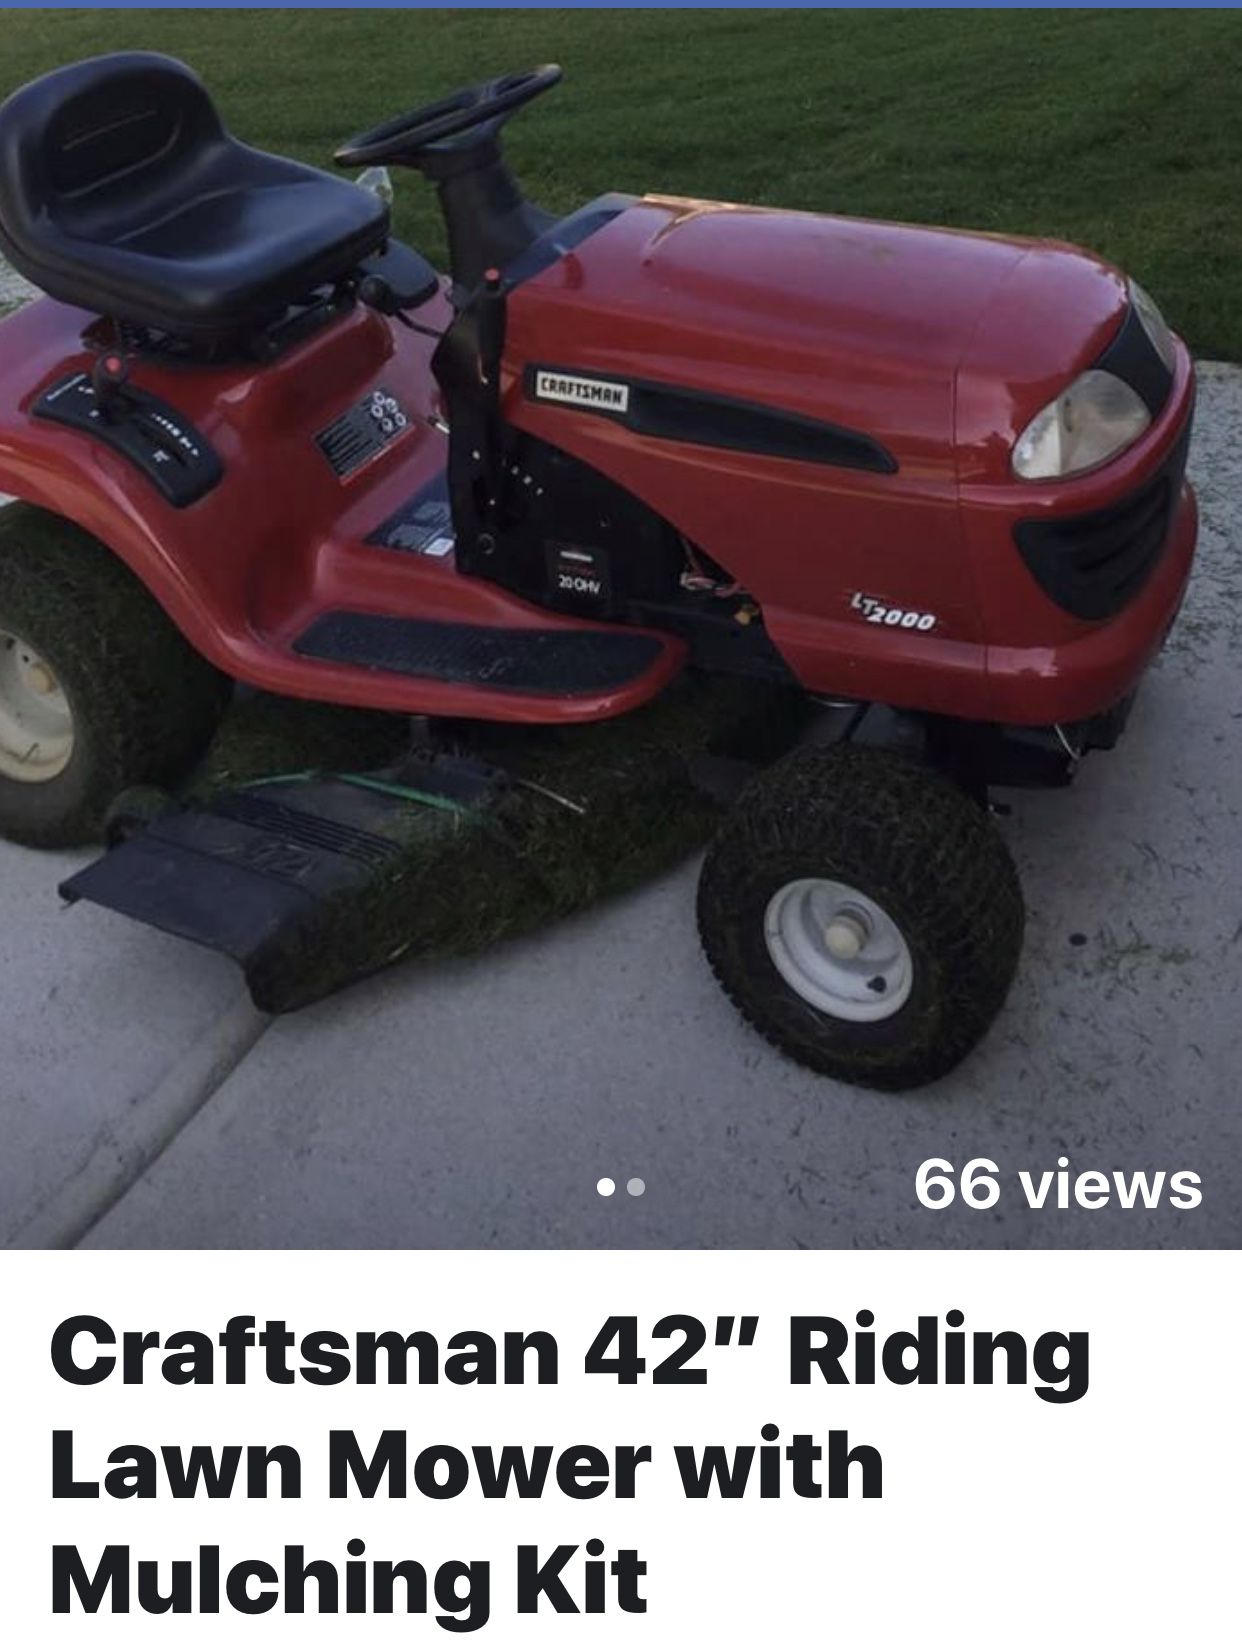 Craftsman 42” Riding Lawn Mower with Mulching Kit